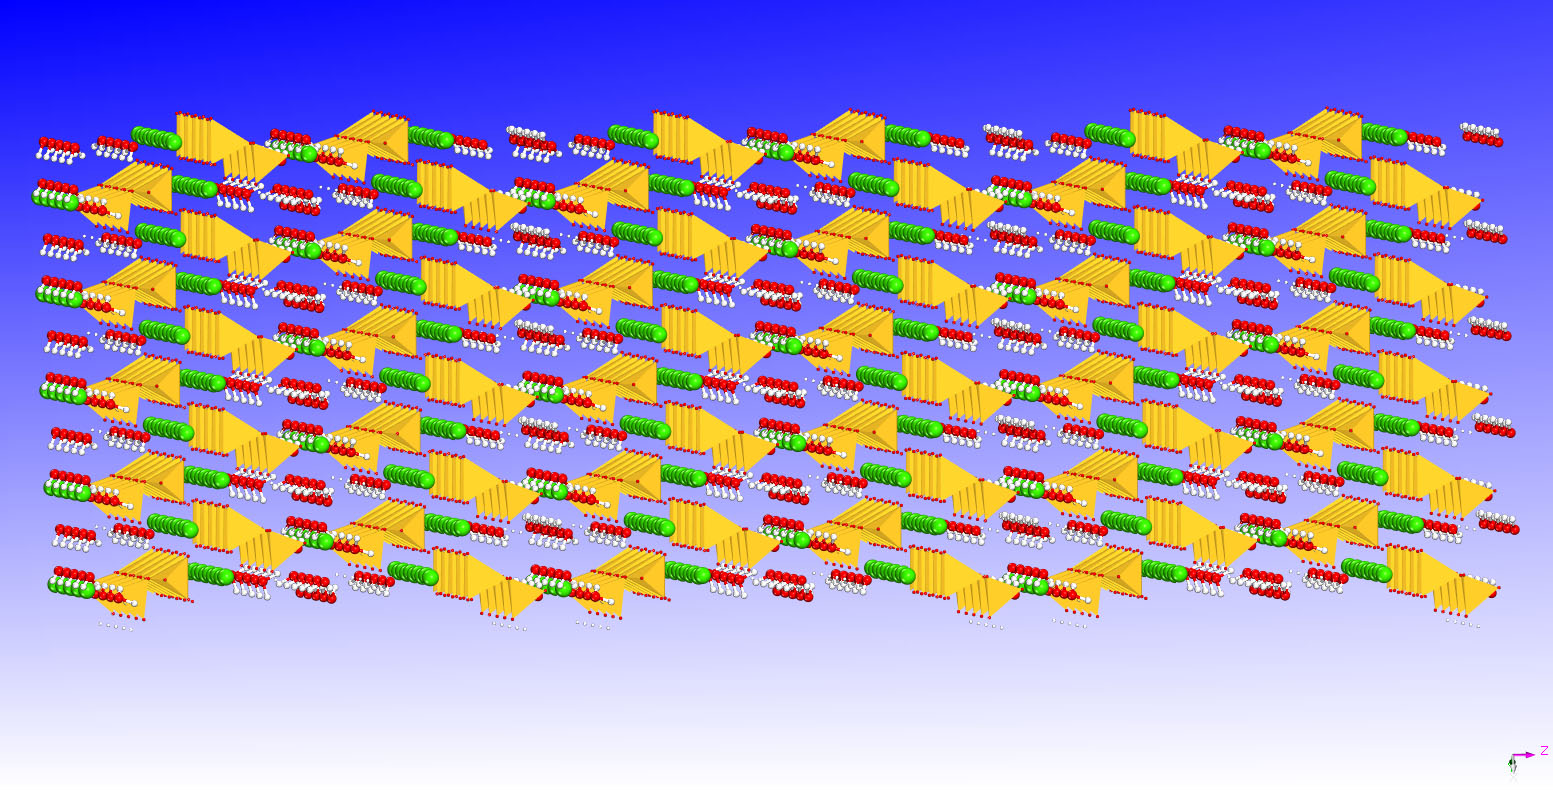 Vergr?sserte Ansicht: Eine Simulation von Zement, basierend auf einem Modell aus der cemff-Datenbank. Das Modell enthält Wasserstoff (weiss), Sauerstoff (rot), Silikat (gelb) und Kalzium (grün). (Bild: ETH Zürich)